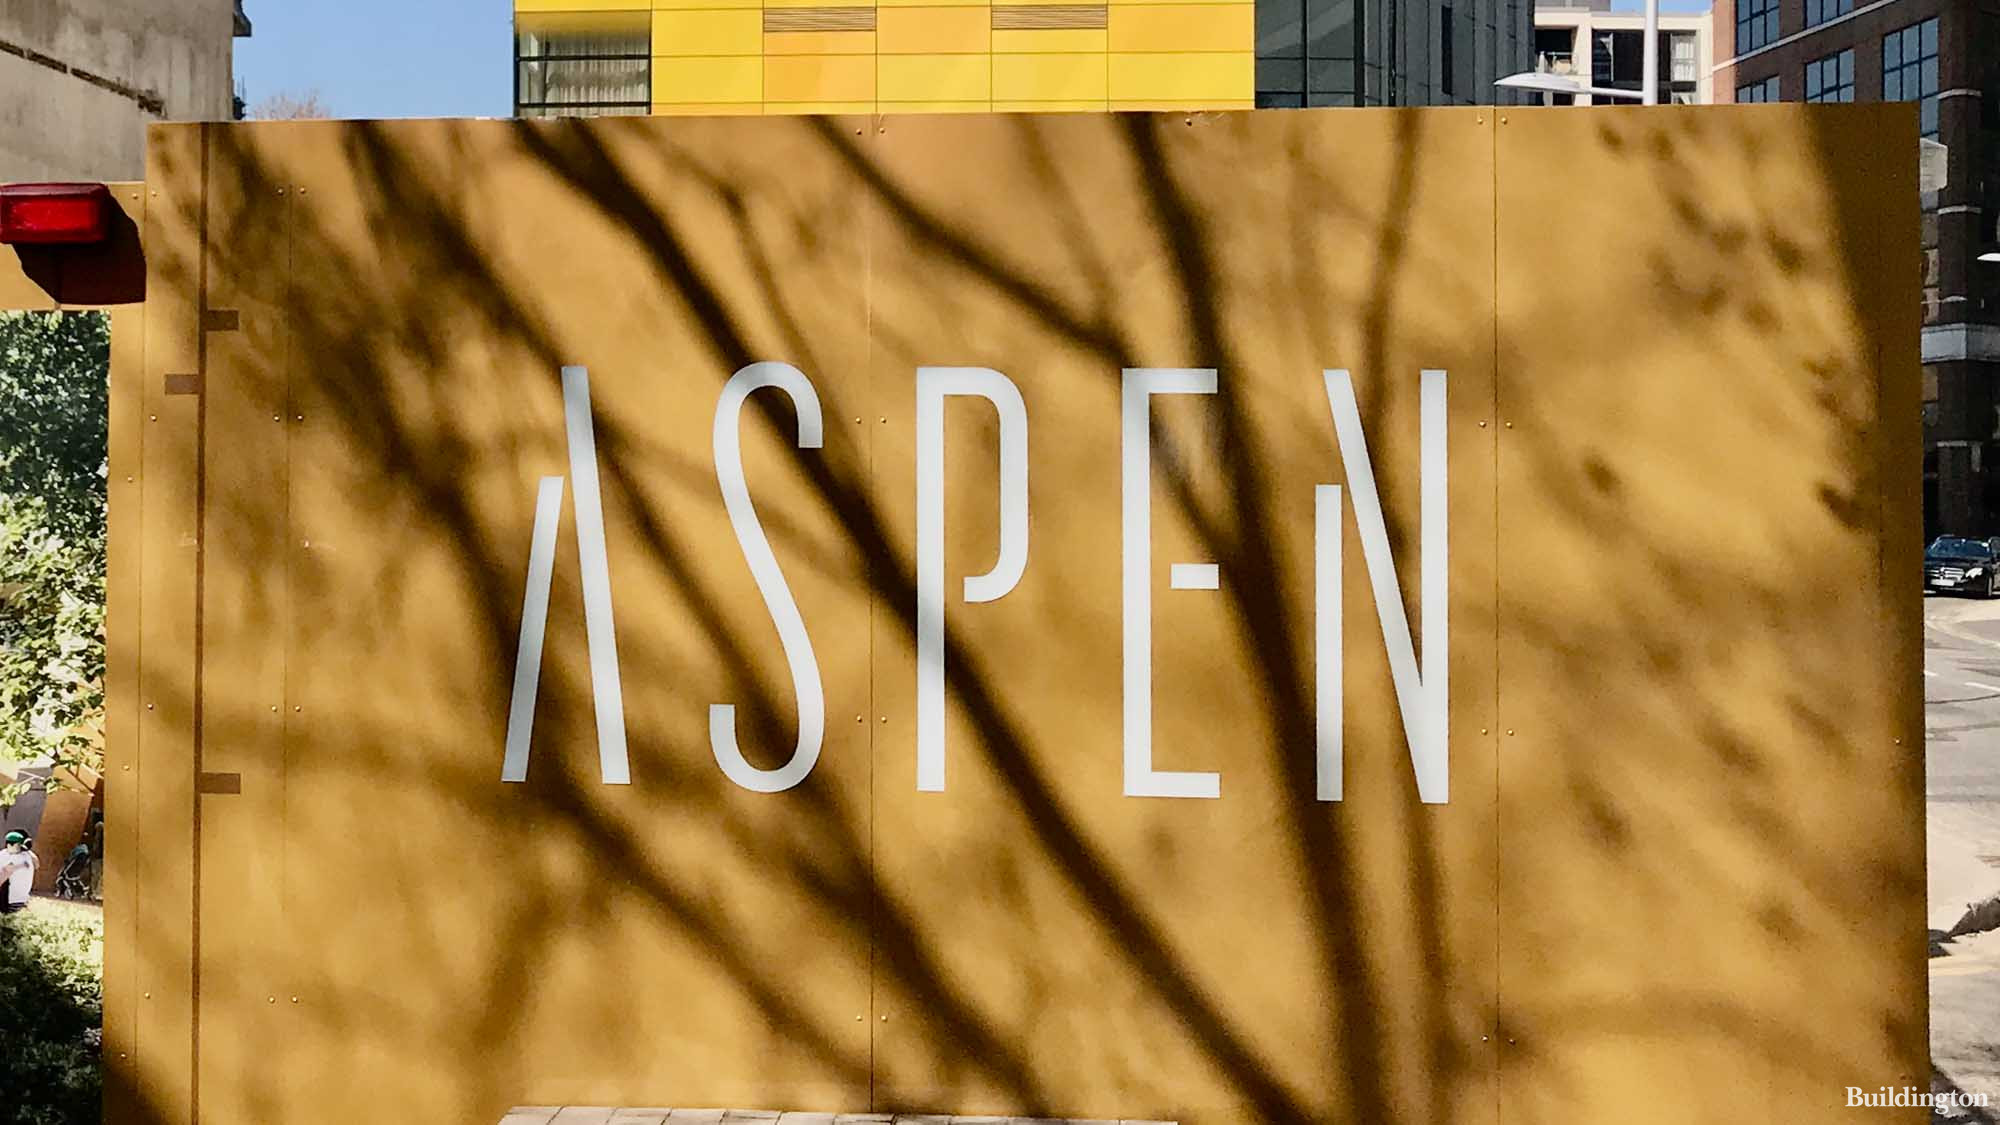 Aspen hoarding in spring 2021